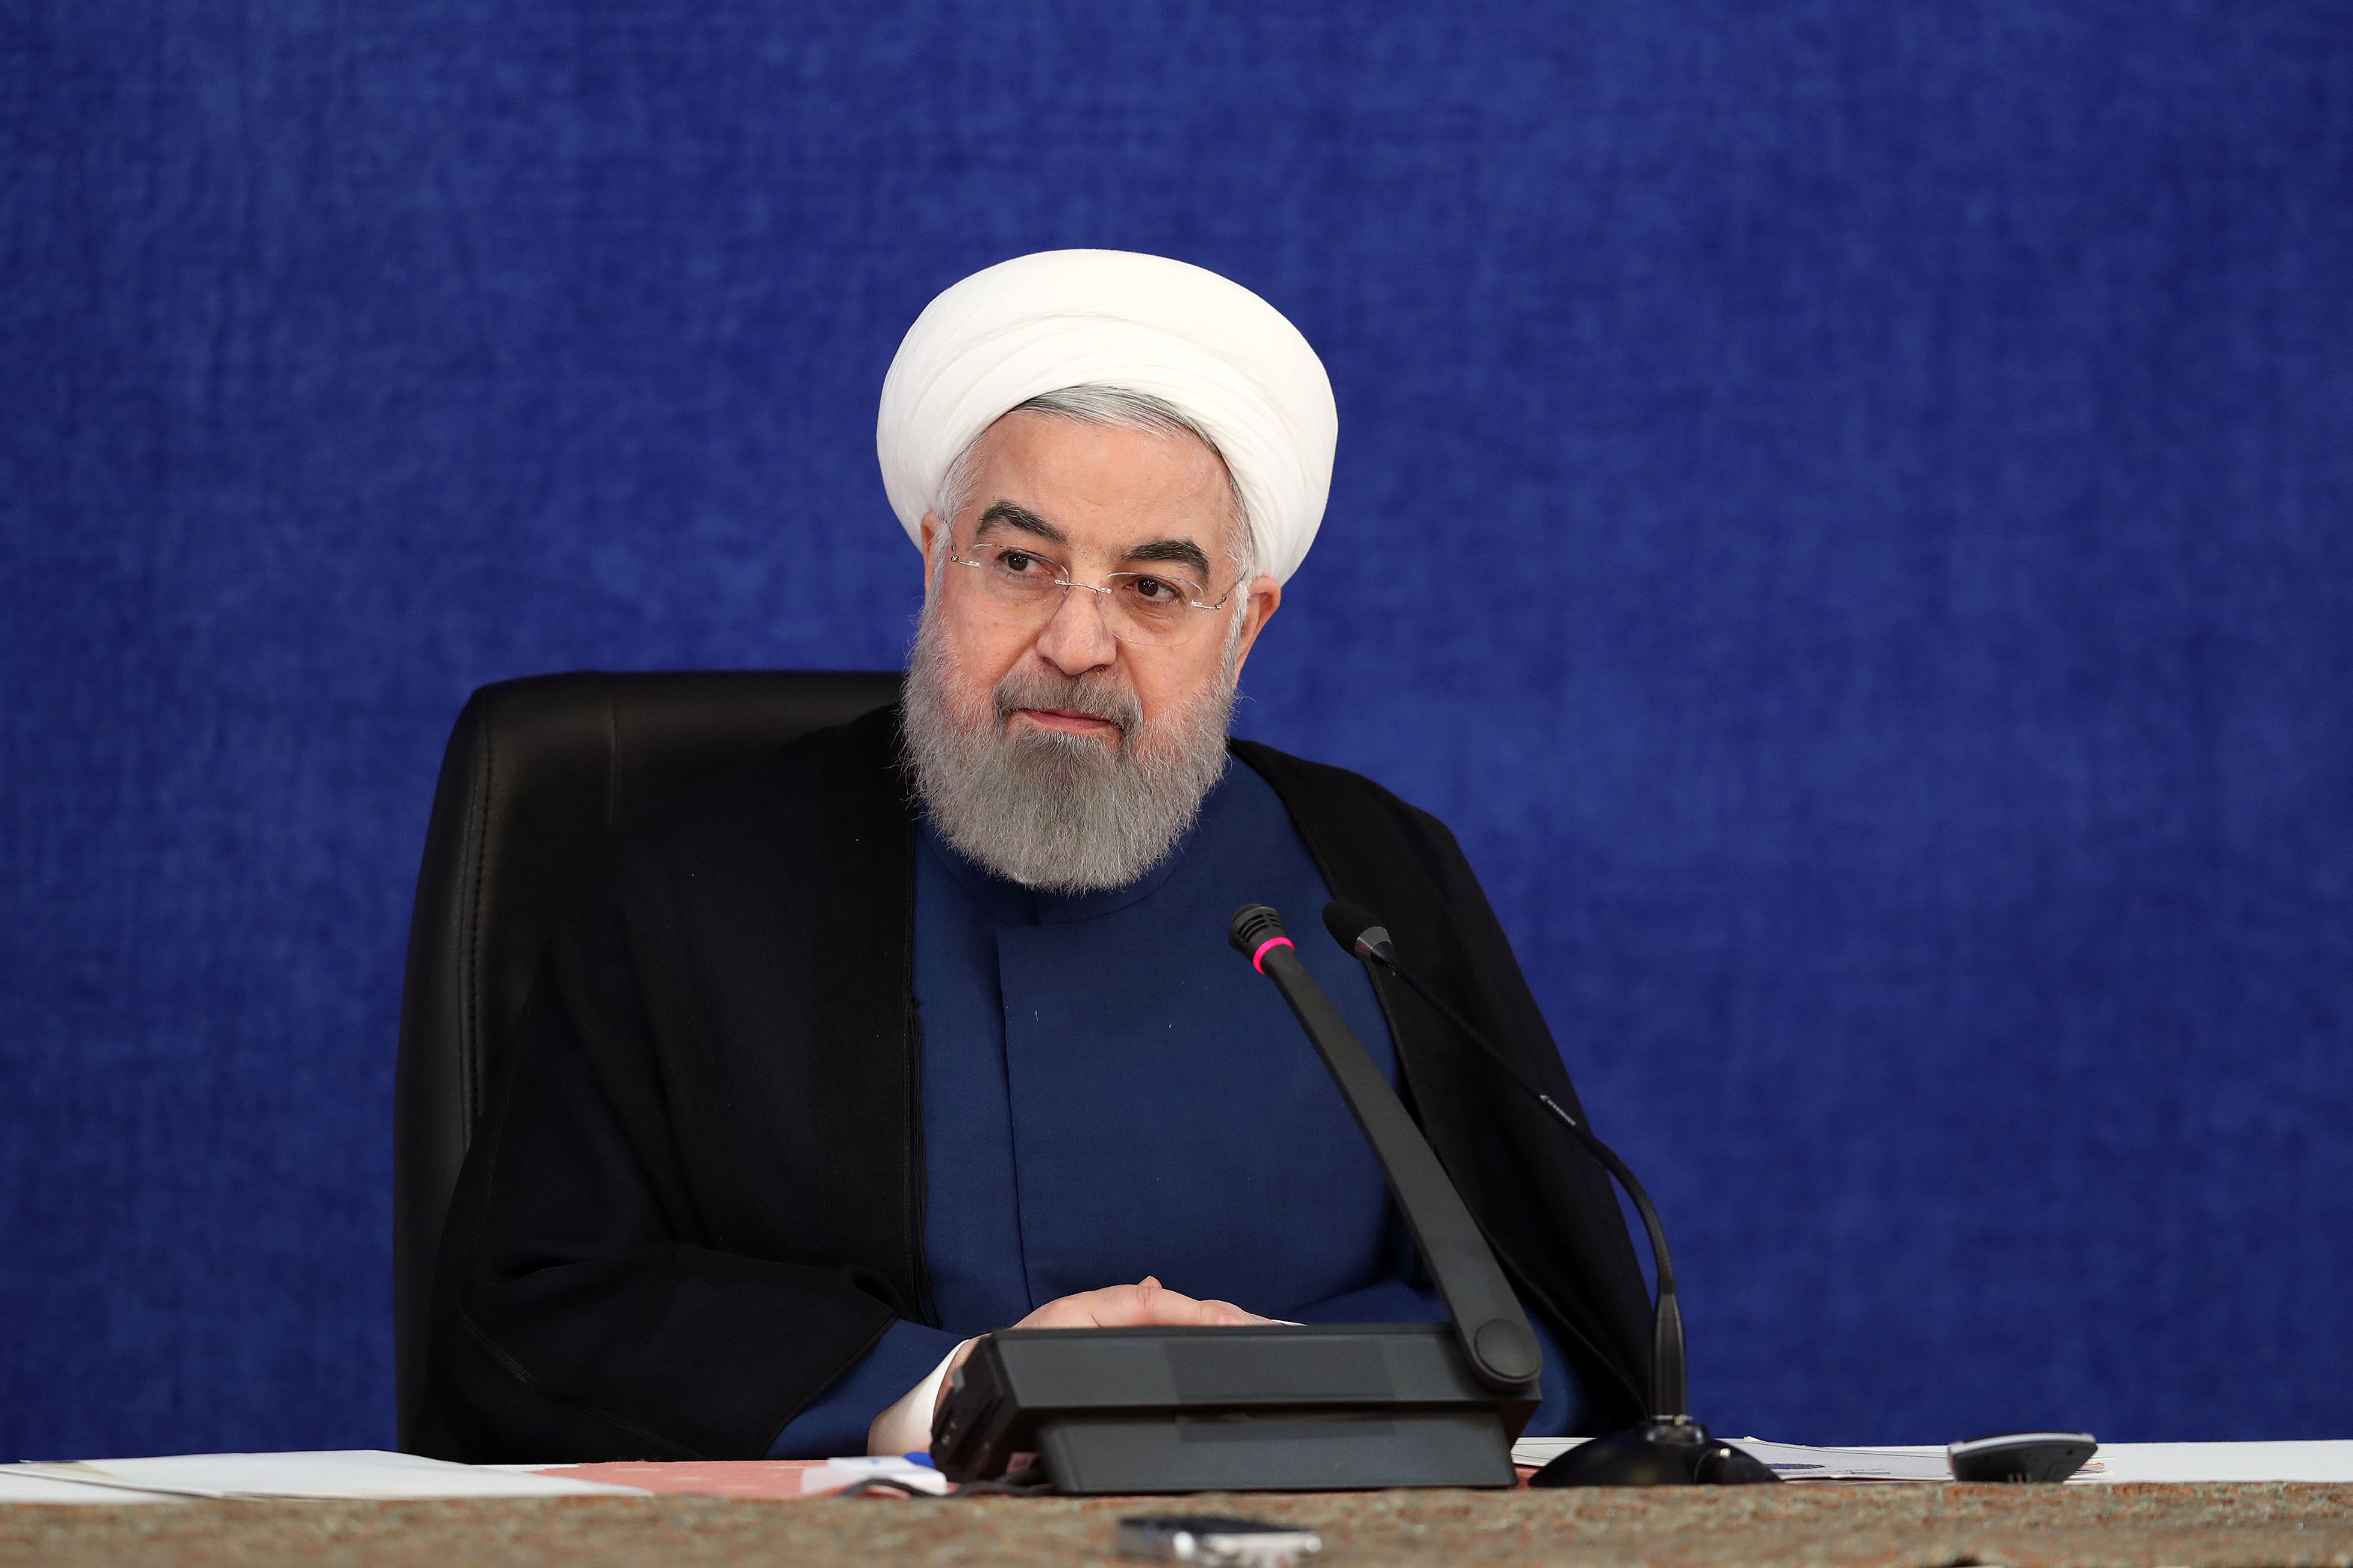 روحانی در این 8 ماه فکر مذاکره با آمریکا را از سرش بیرون کند! 